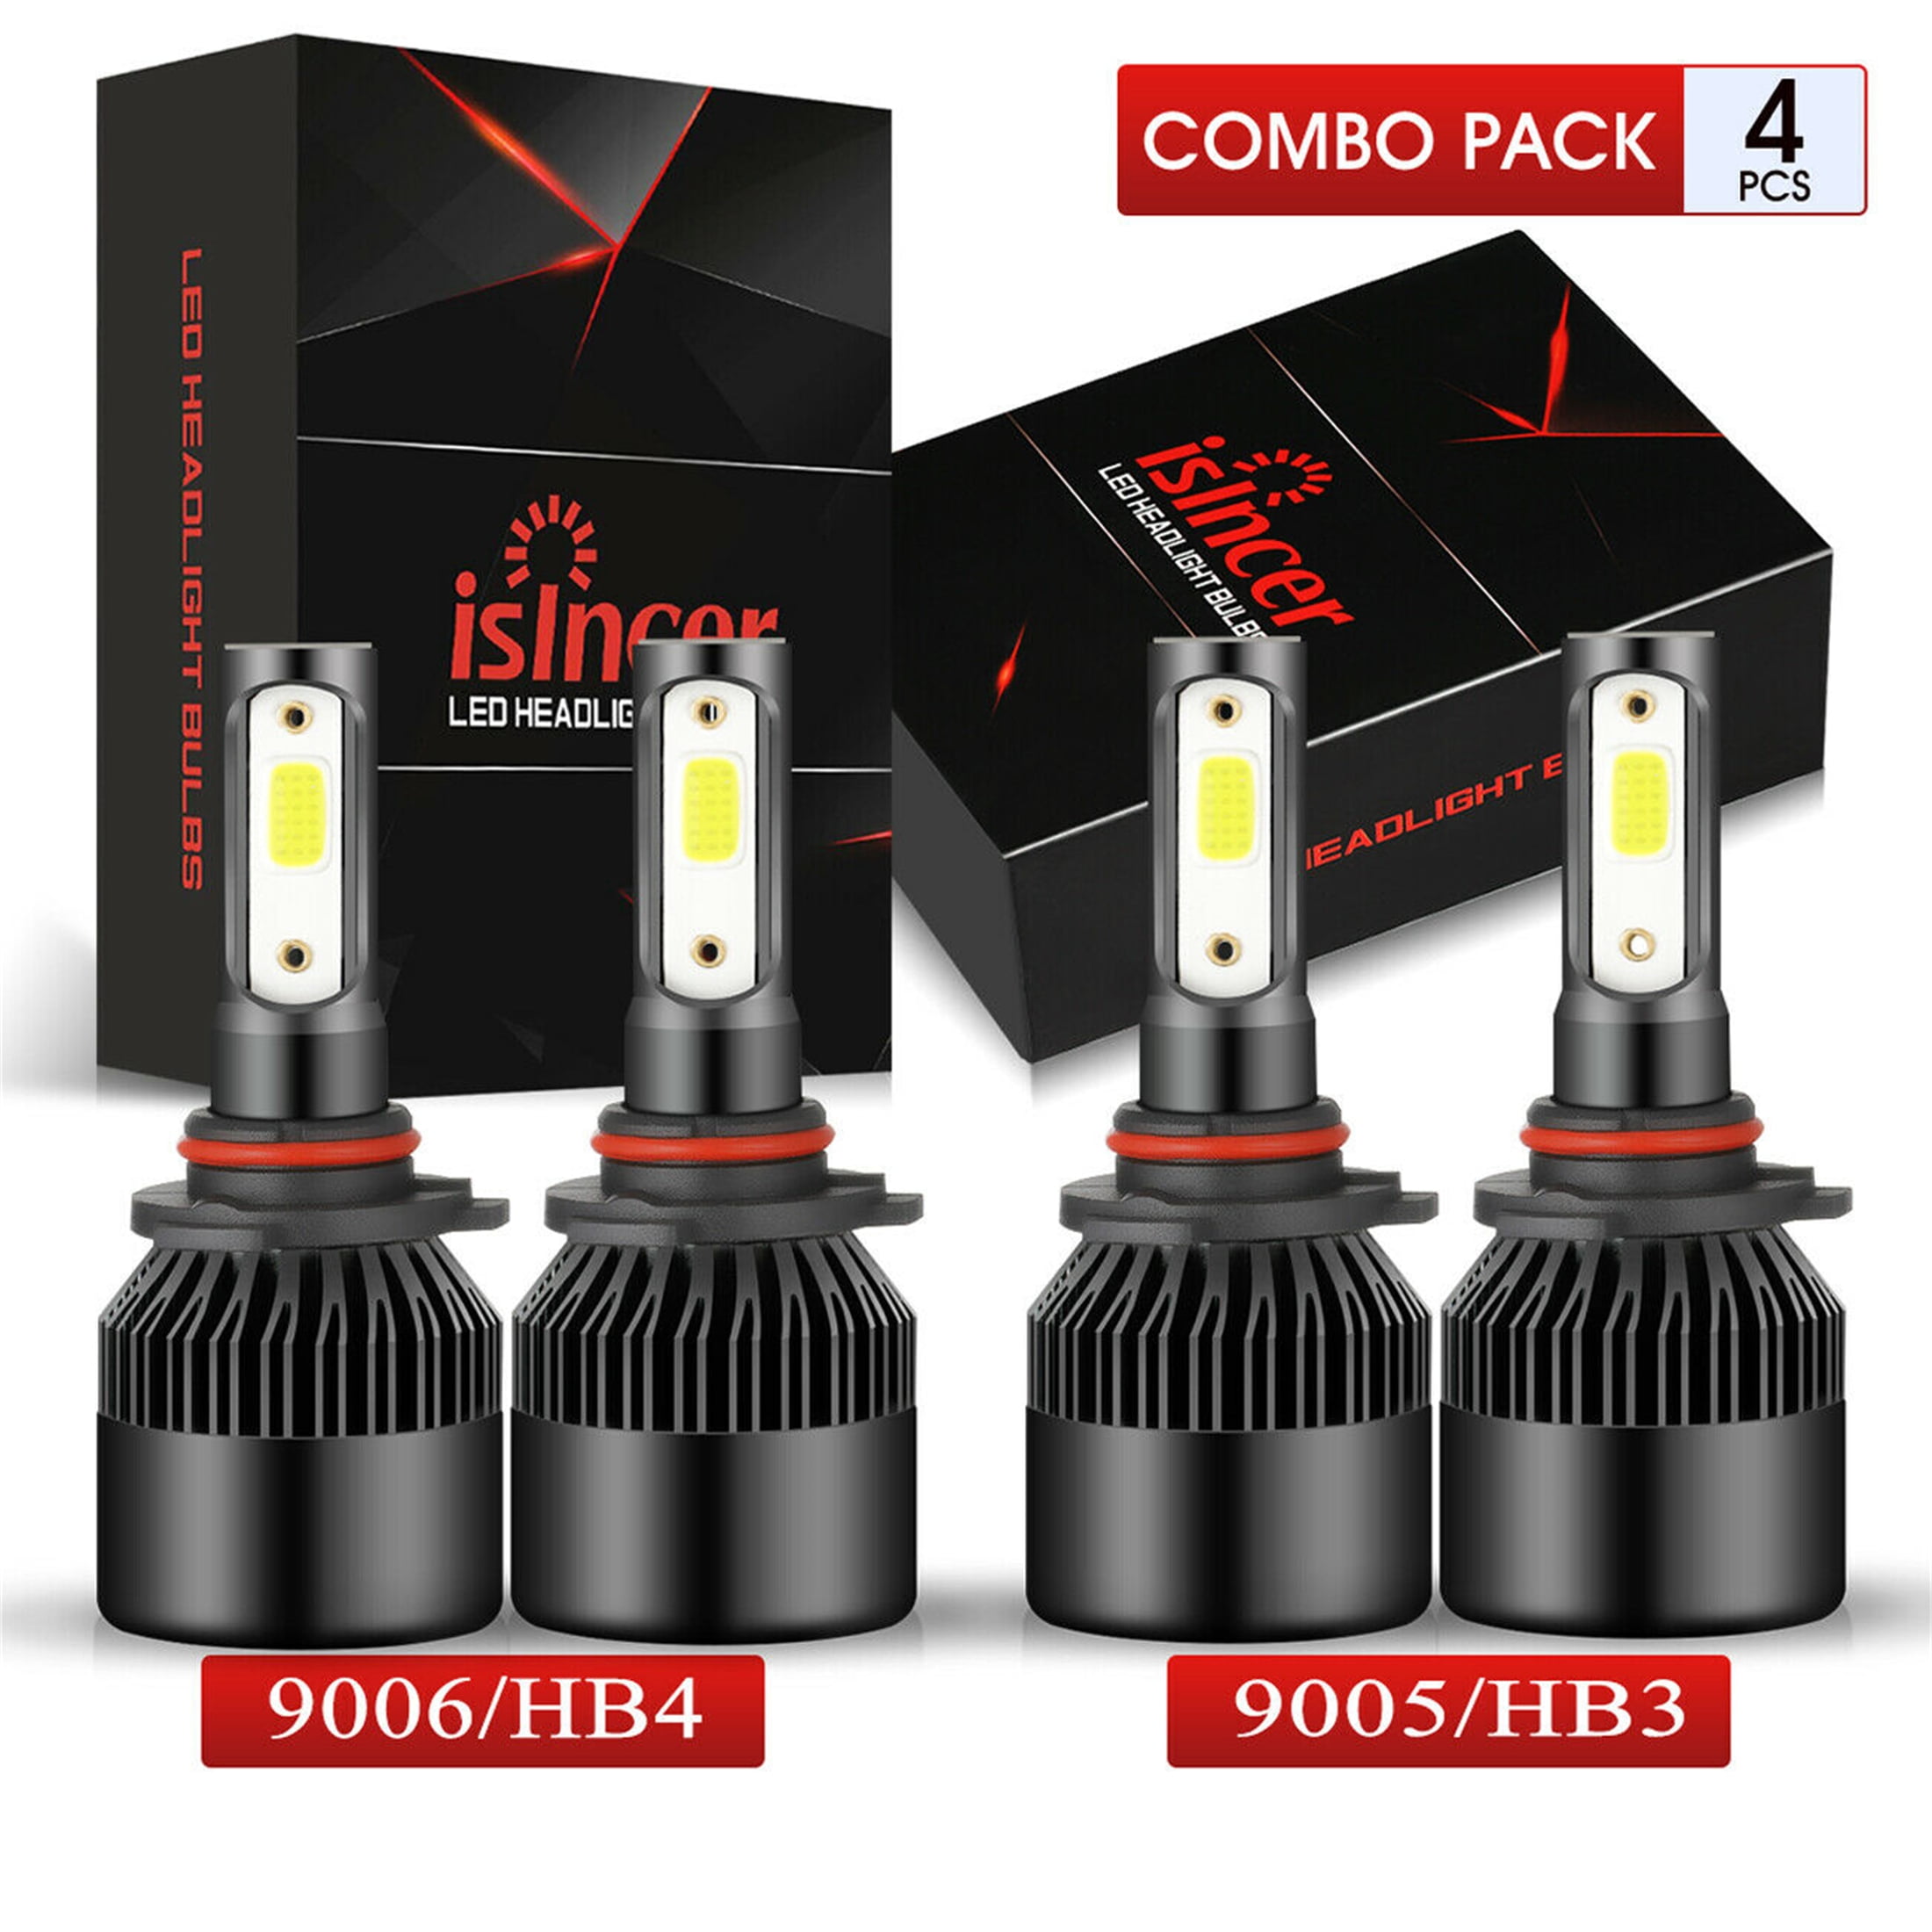 4PCS 9005 9006 LED Combo Headlight Bulbs High Low Beam Kit 240W CREE 6000K White 